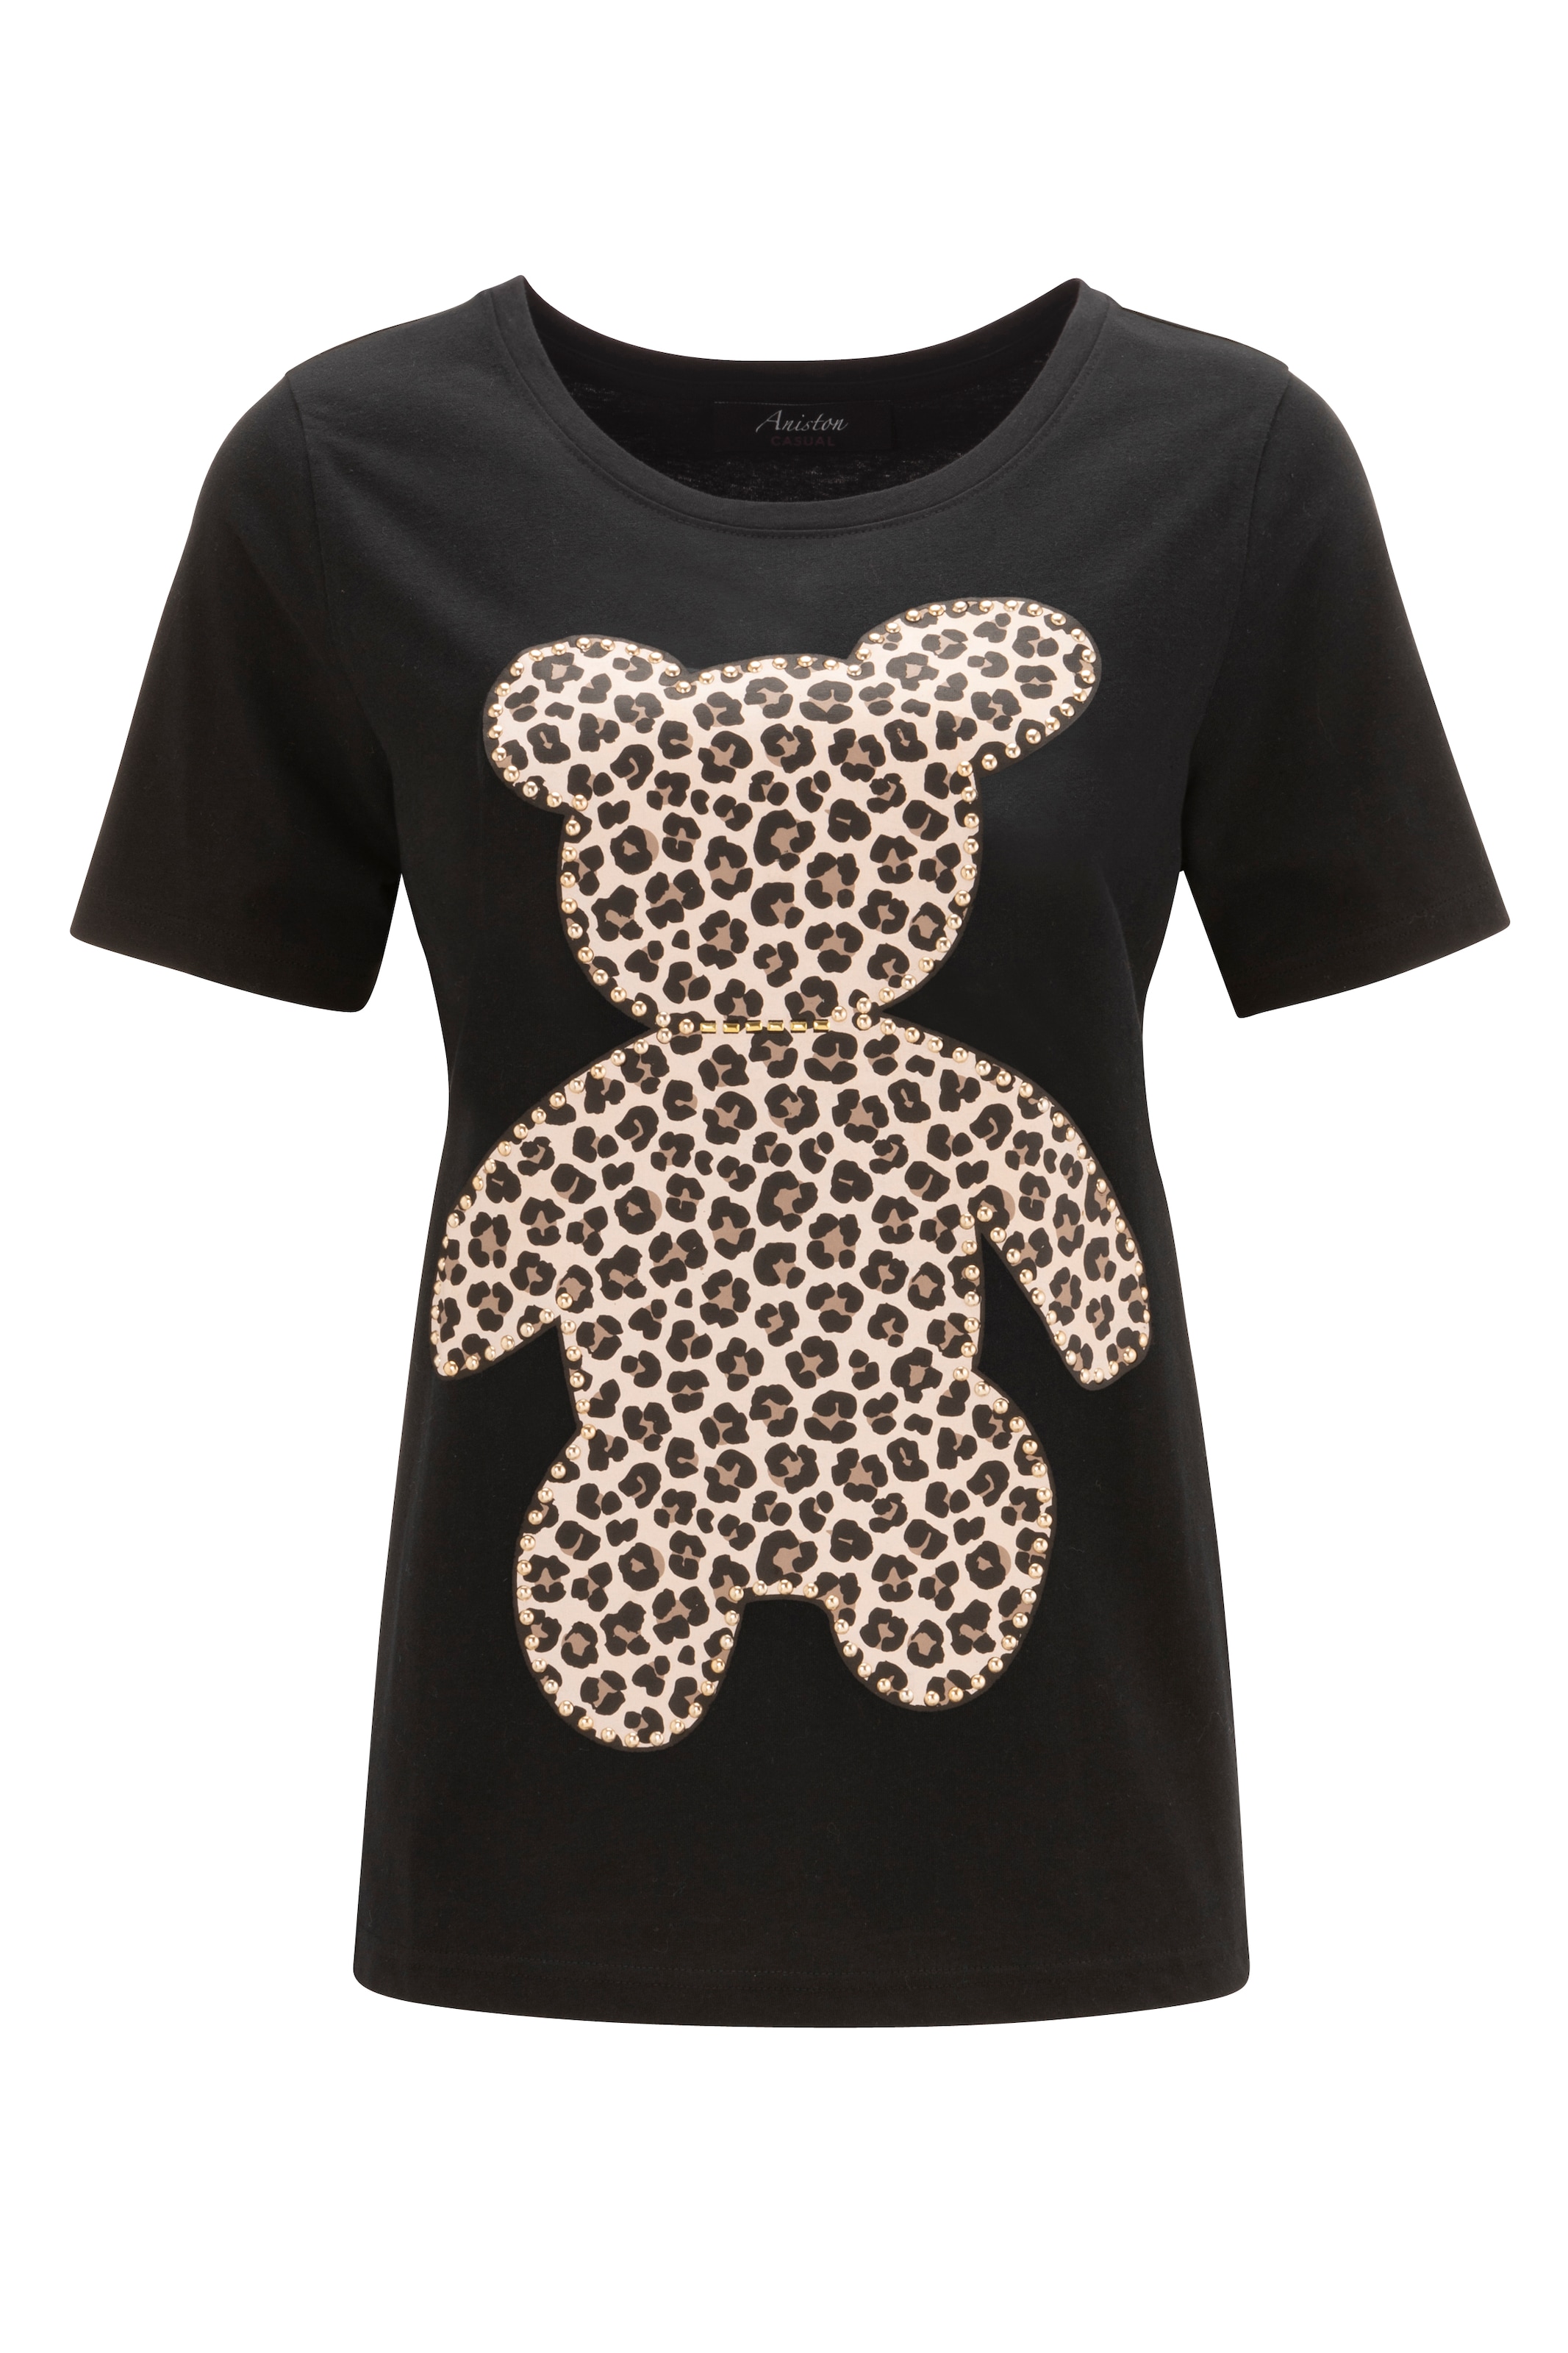 Aniston CASUAL T-Shirt, mit Glanznieten verzierter Bärchen-Frontdruck - NEUE  KOLLEKTIOM shoppen | I\'m walking